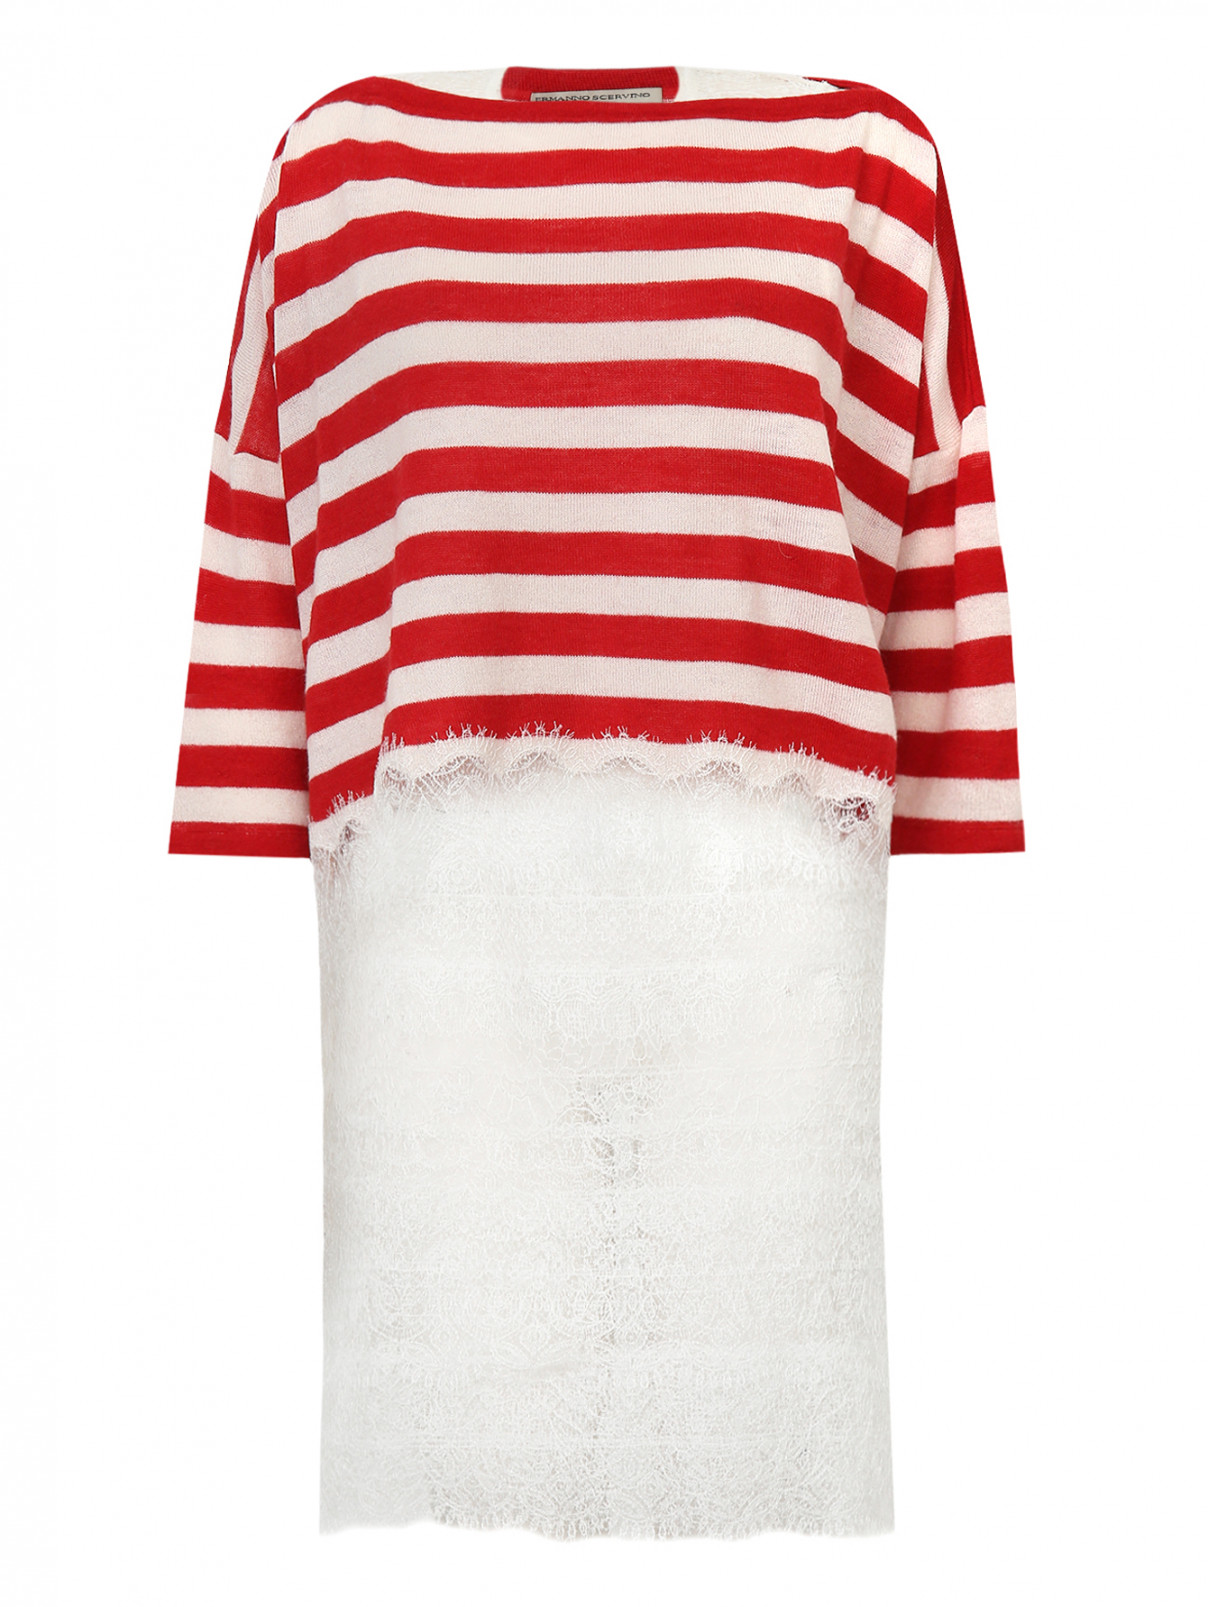 Платье мини  + джемпер в полоску  из шерсти и шелка декорированные кружевом Ermanno Scervino  –  Общий вид  – Цвет:  Белый